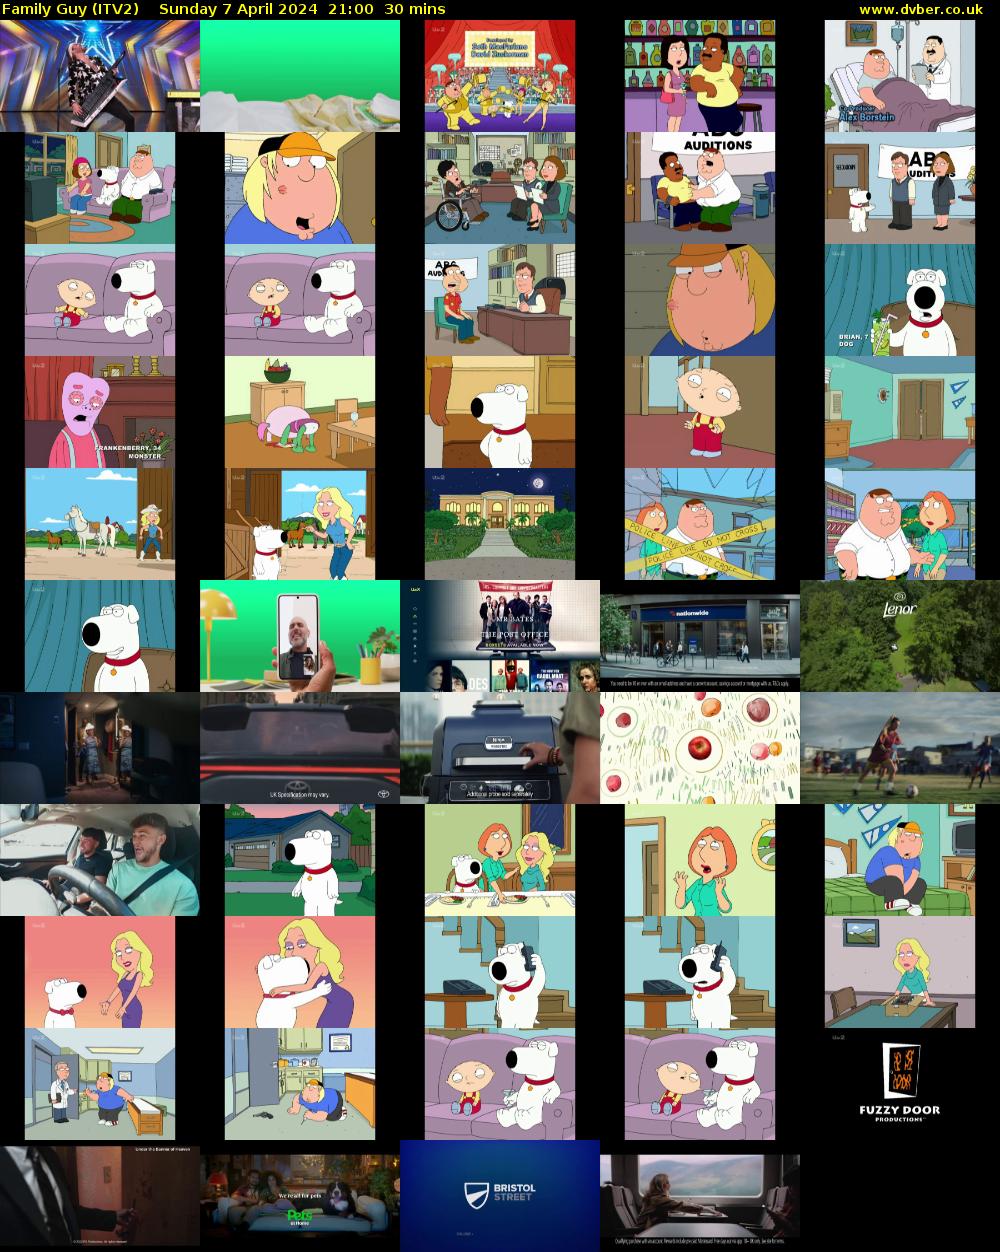 Family Guy (ITV2) Sunday 7 April 2024 21:00 - 21:30